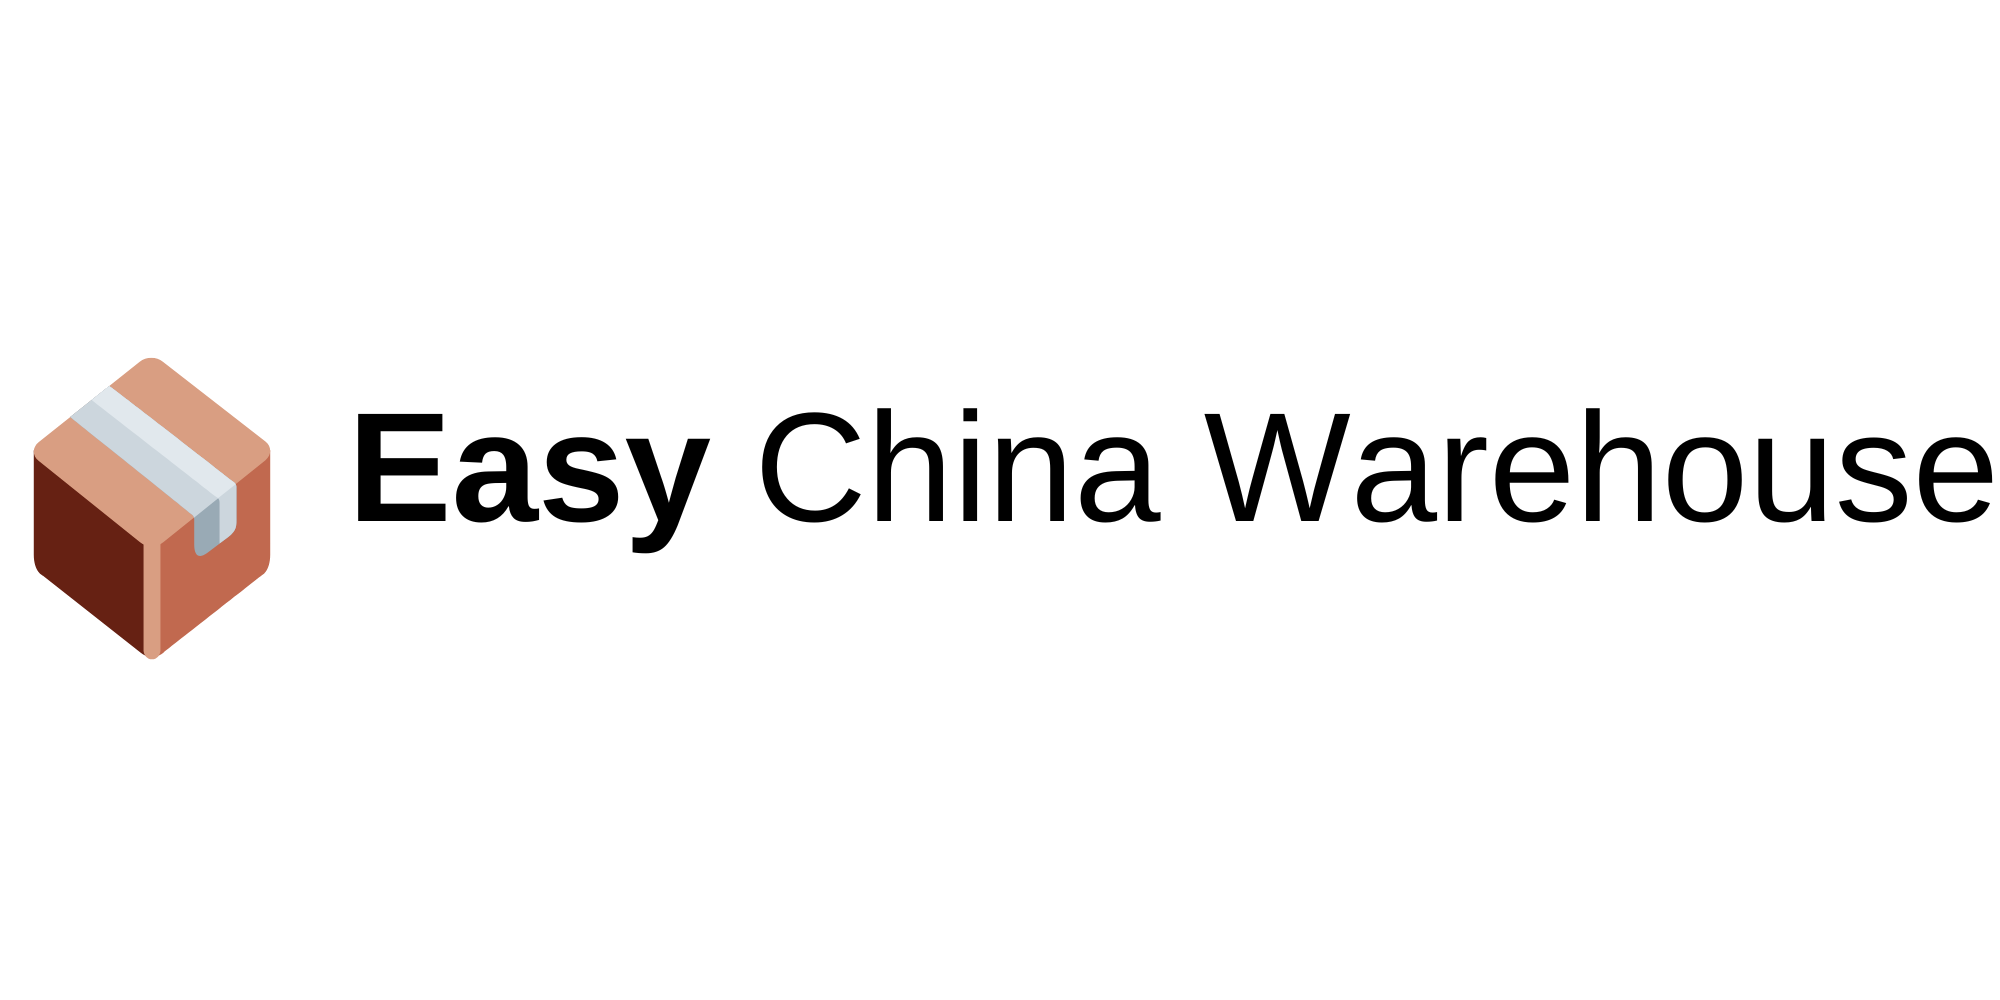 Easy China Warehouse